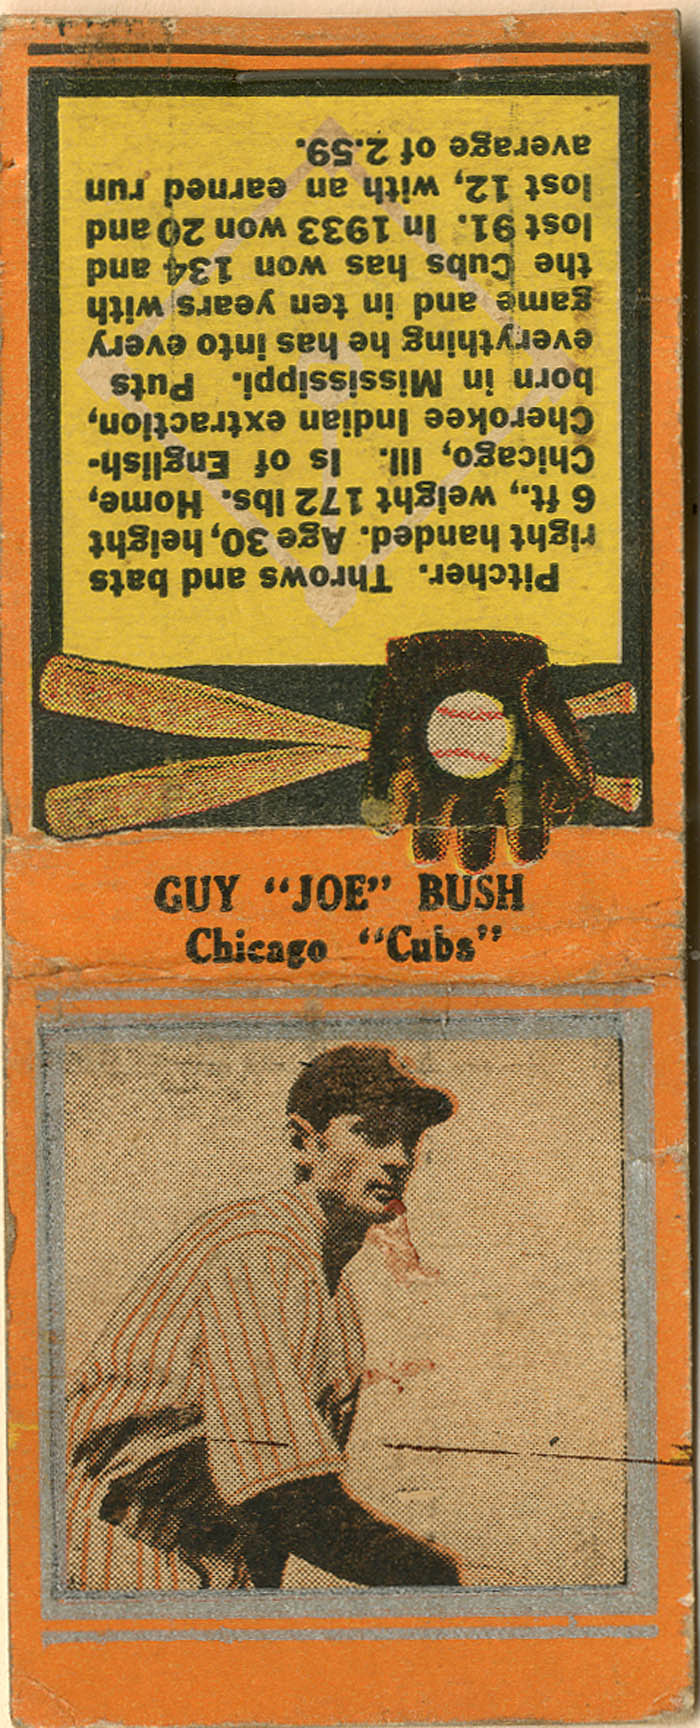 Guy "Joe" Bush Matchbook - Baseball Americana